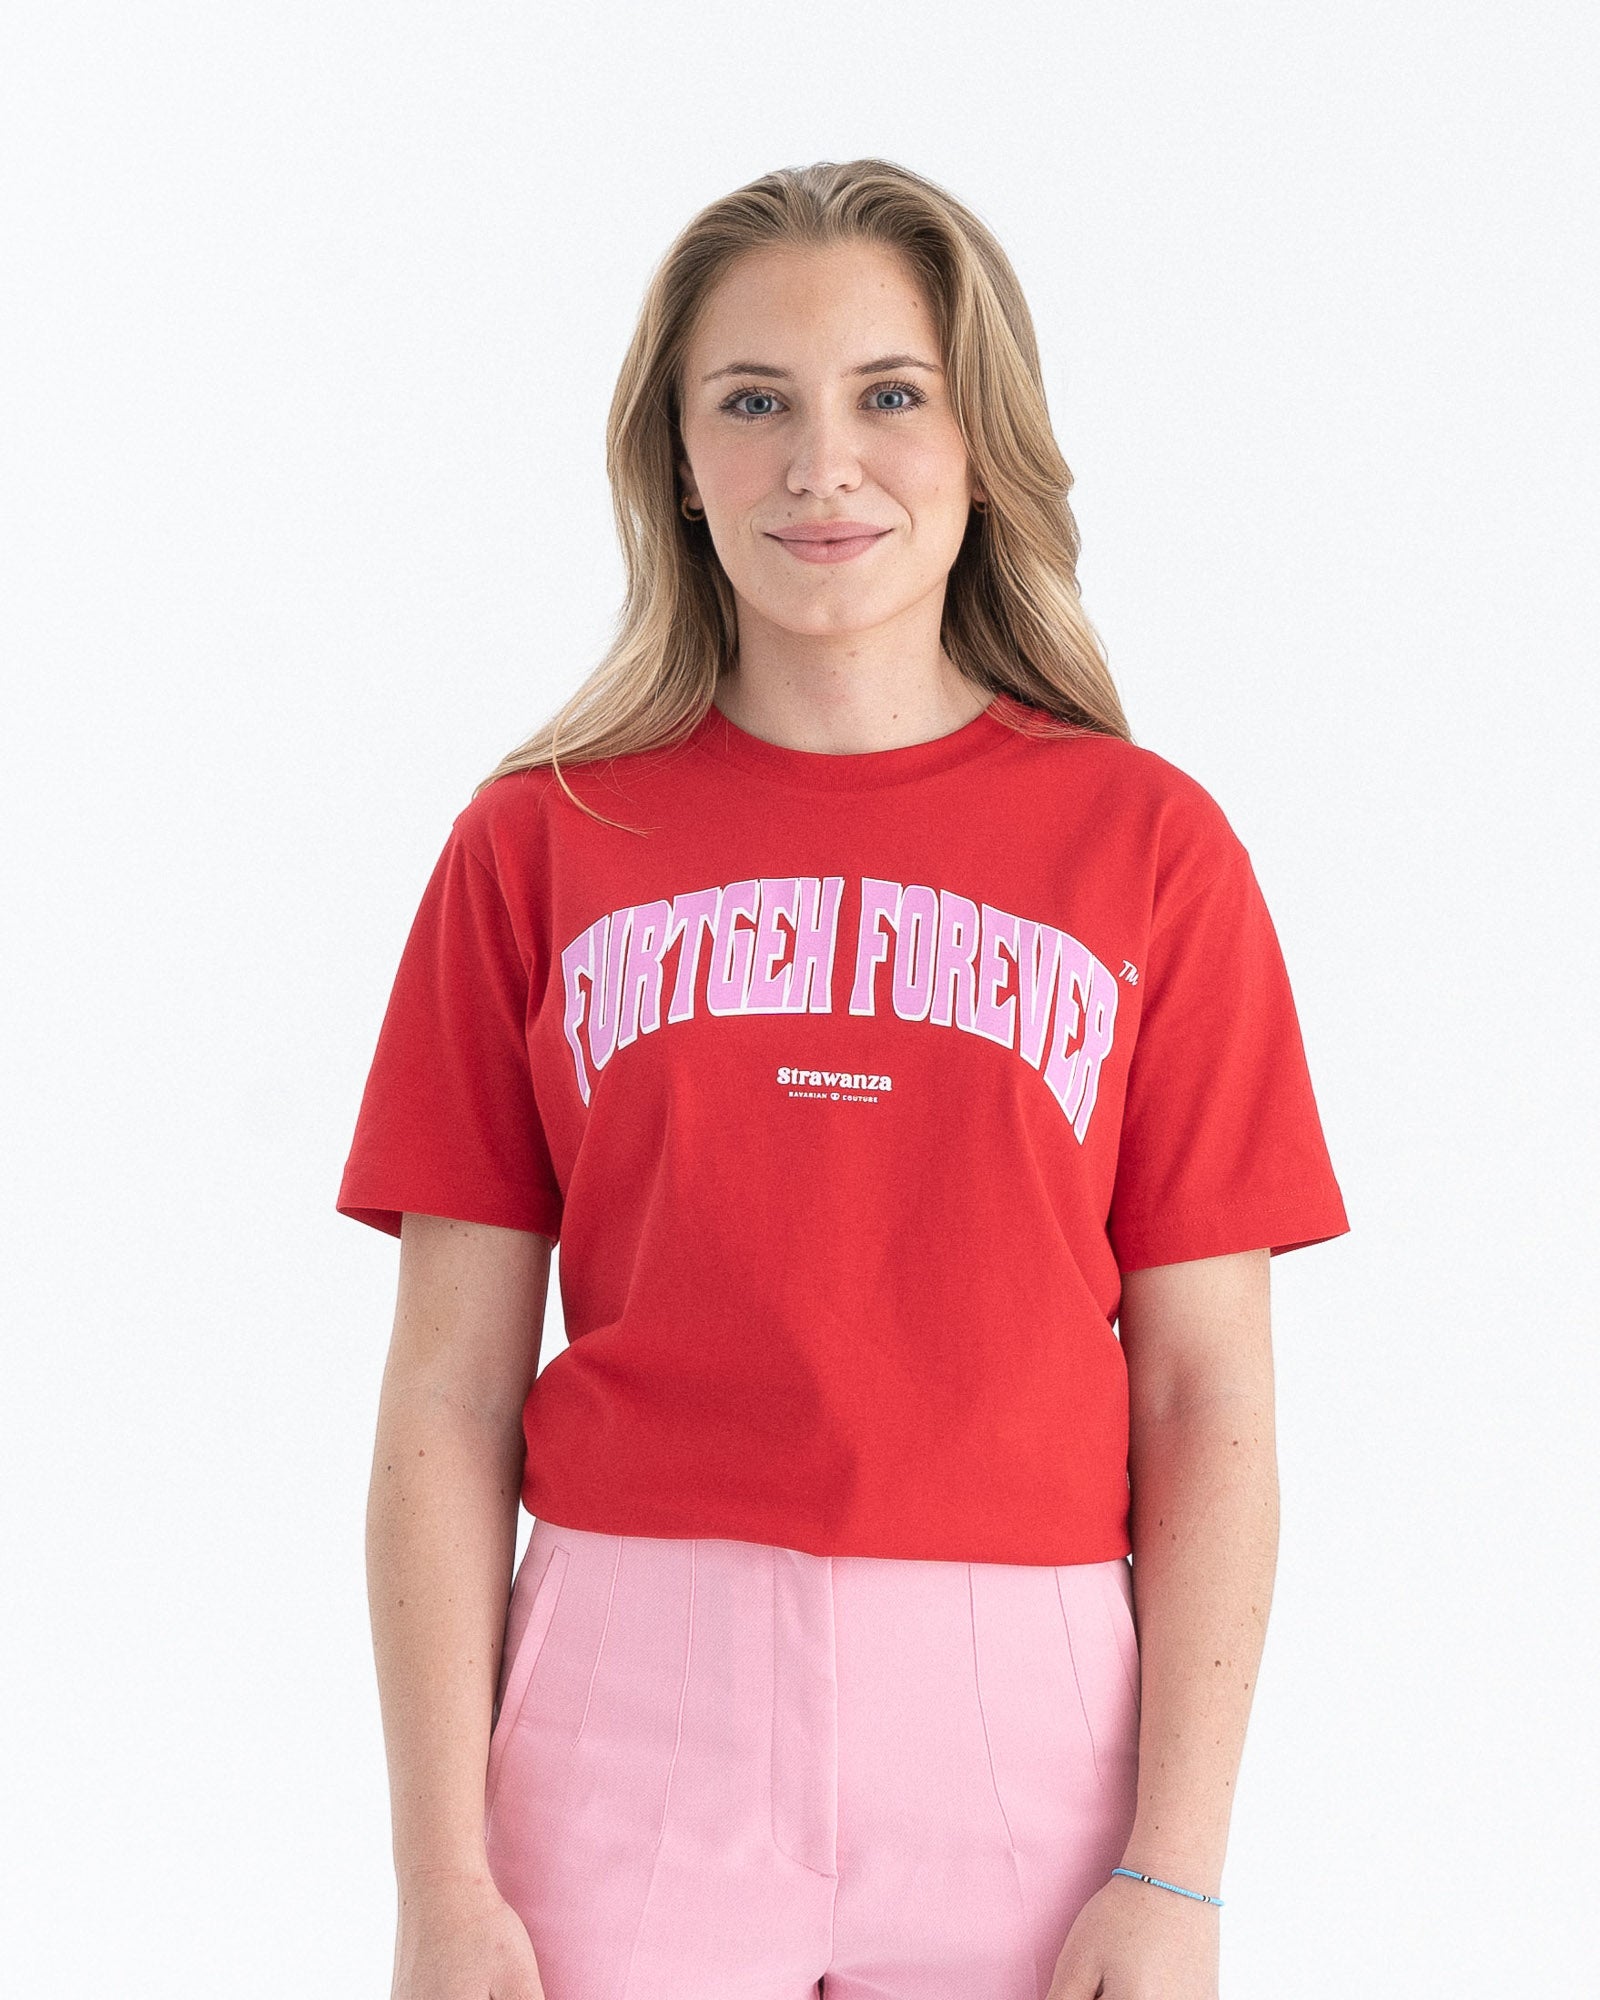 Weibliches Model trägt ein rotes T-Shirt mit einem großen, rosanen 